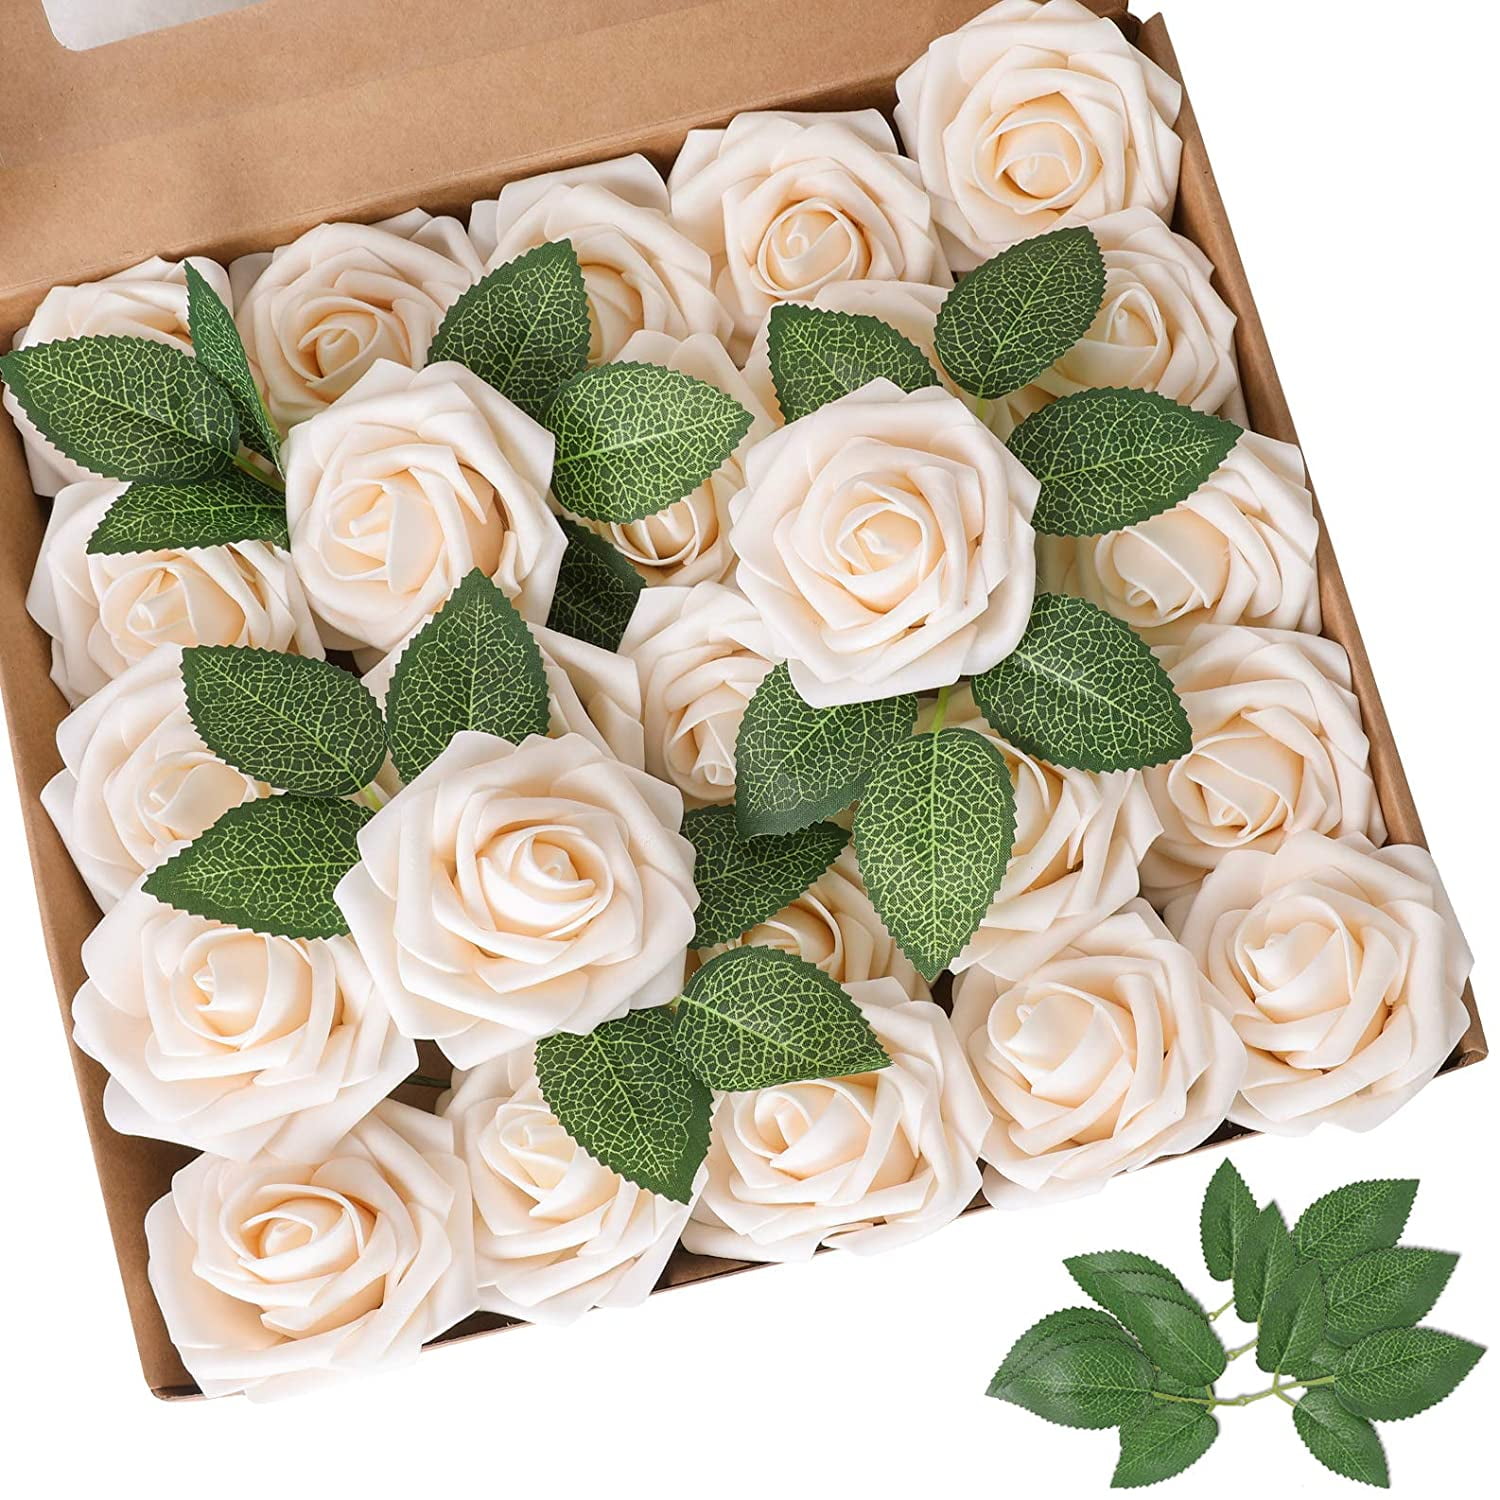 50pcs Foam White Rose Artificial Flowers Wedding Party Bridal Bouquet Home Decor 